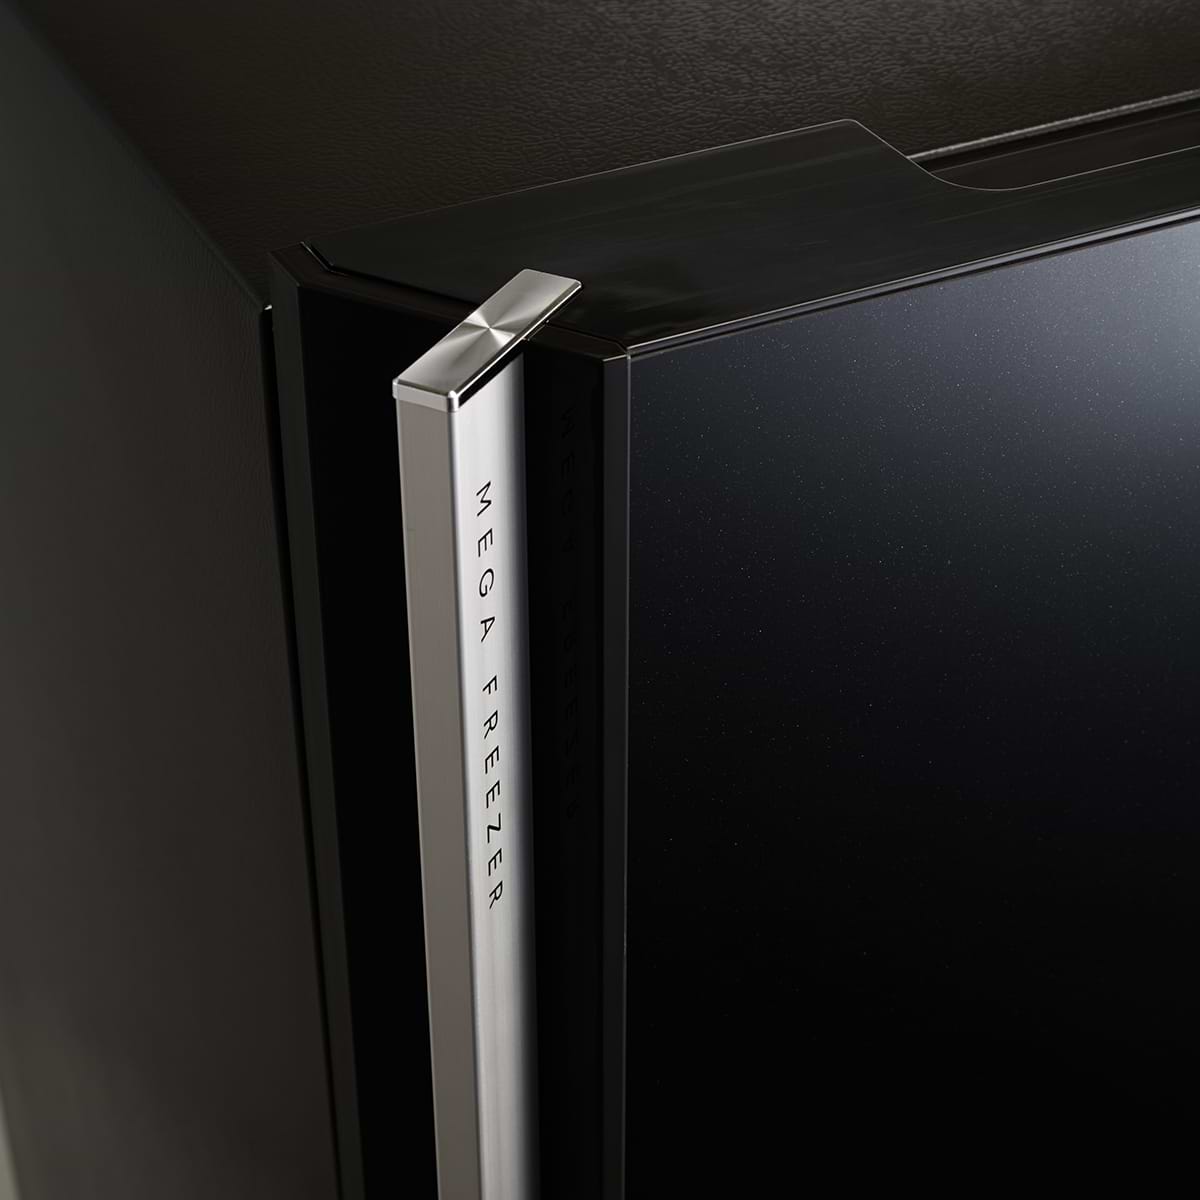 מקרר מקפיא עליון  זכוכית סילבר משוחר  דגם SHARP 4650 - התקן שבת מובנה - ראלקו יבואן רשמי